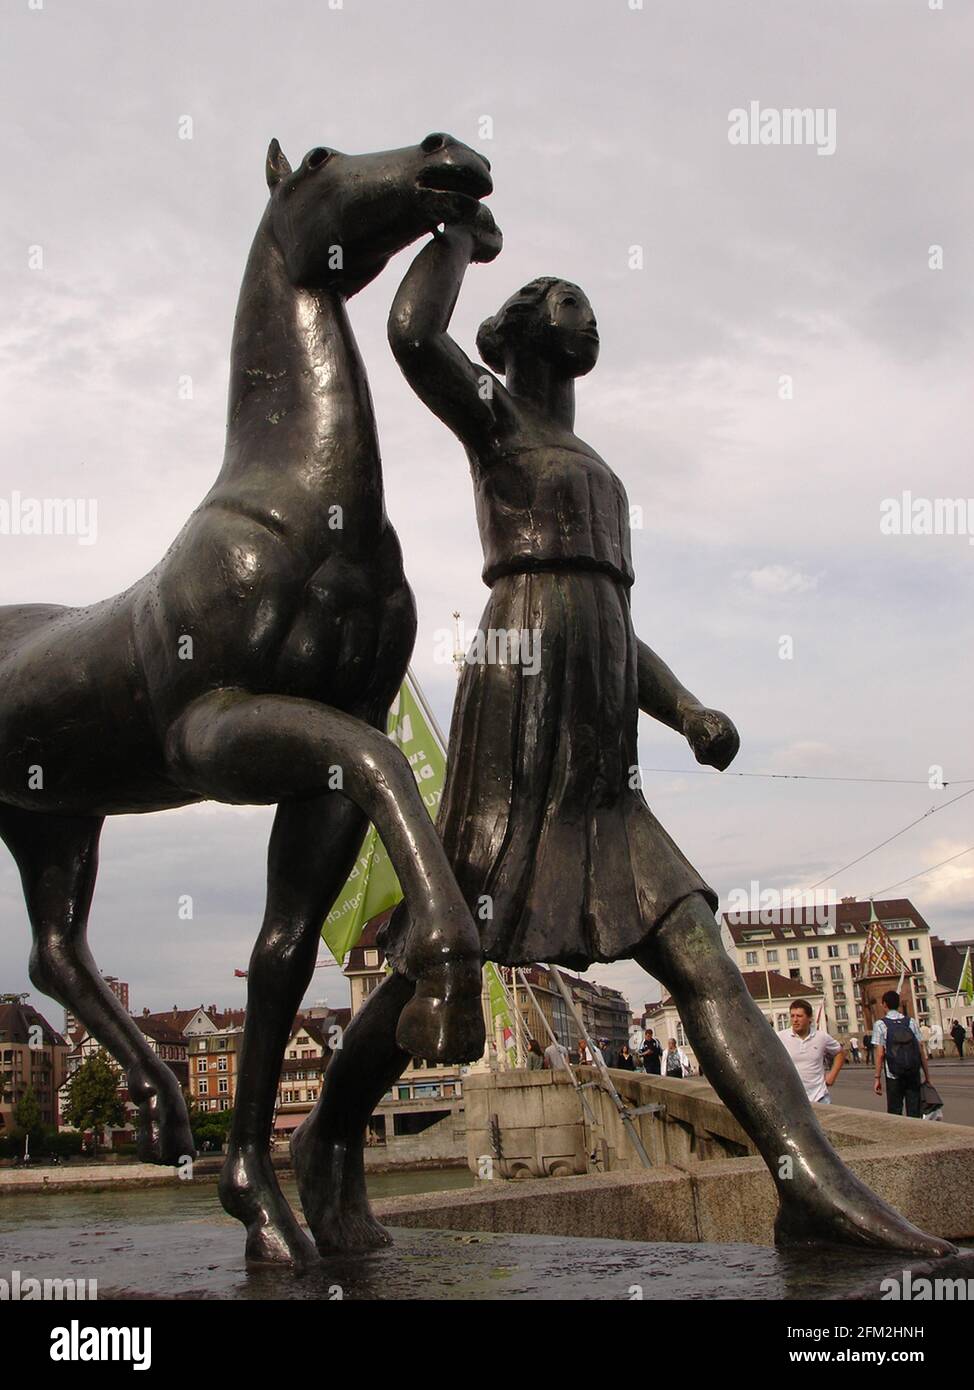 Mädchen führt ein Pferd eine Skulptur des Schweizer Künstlers Carl Burckhardt, genannt Amazone Pferd führend in Basel, Schweiz. Stockfoto